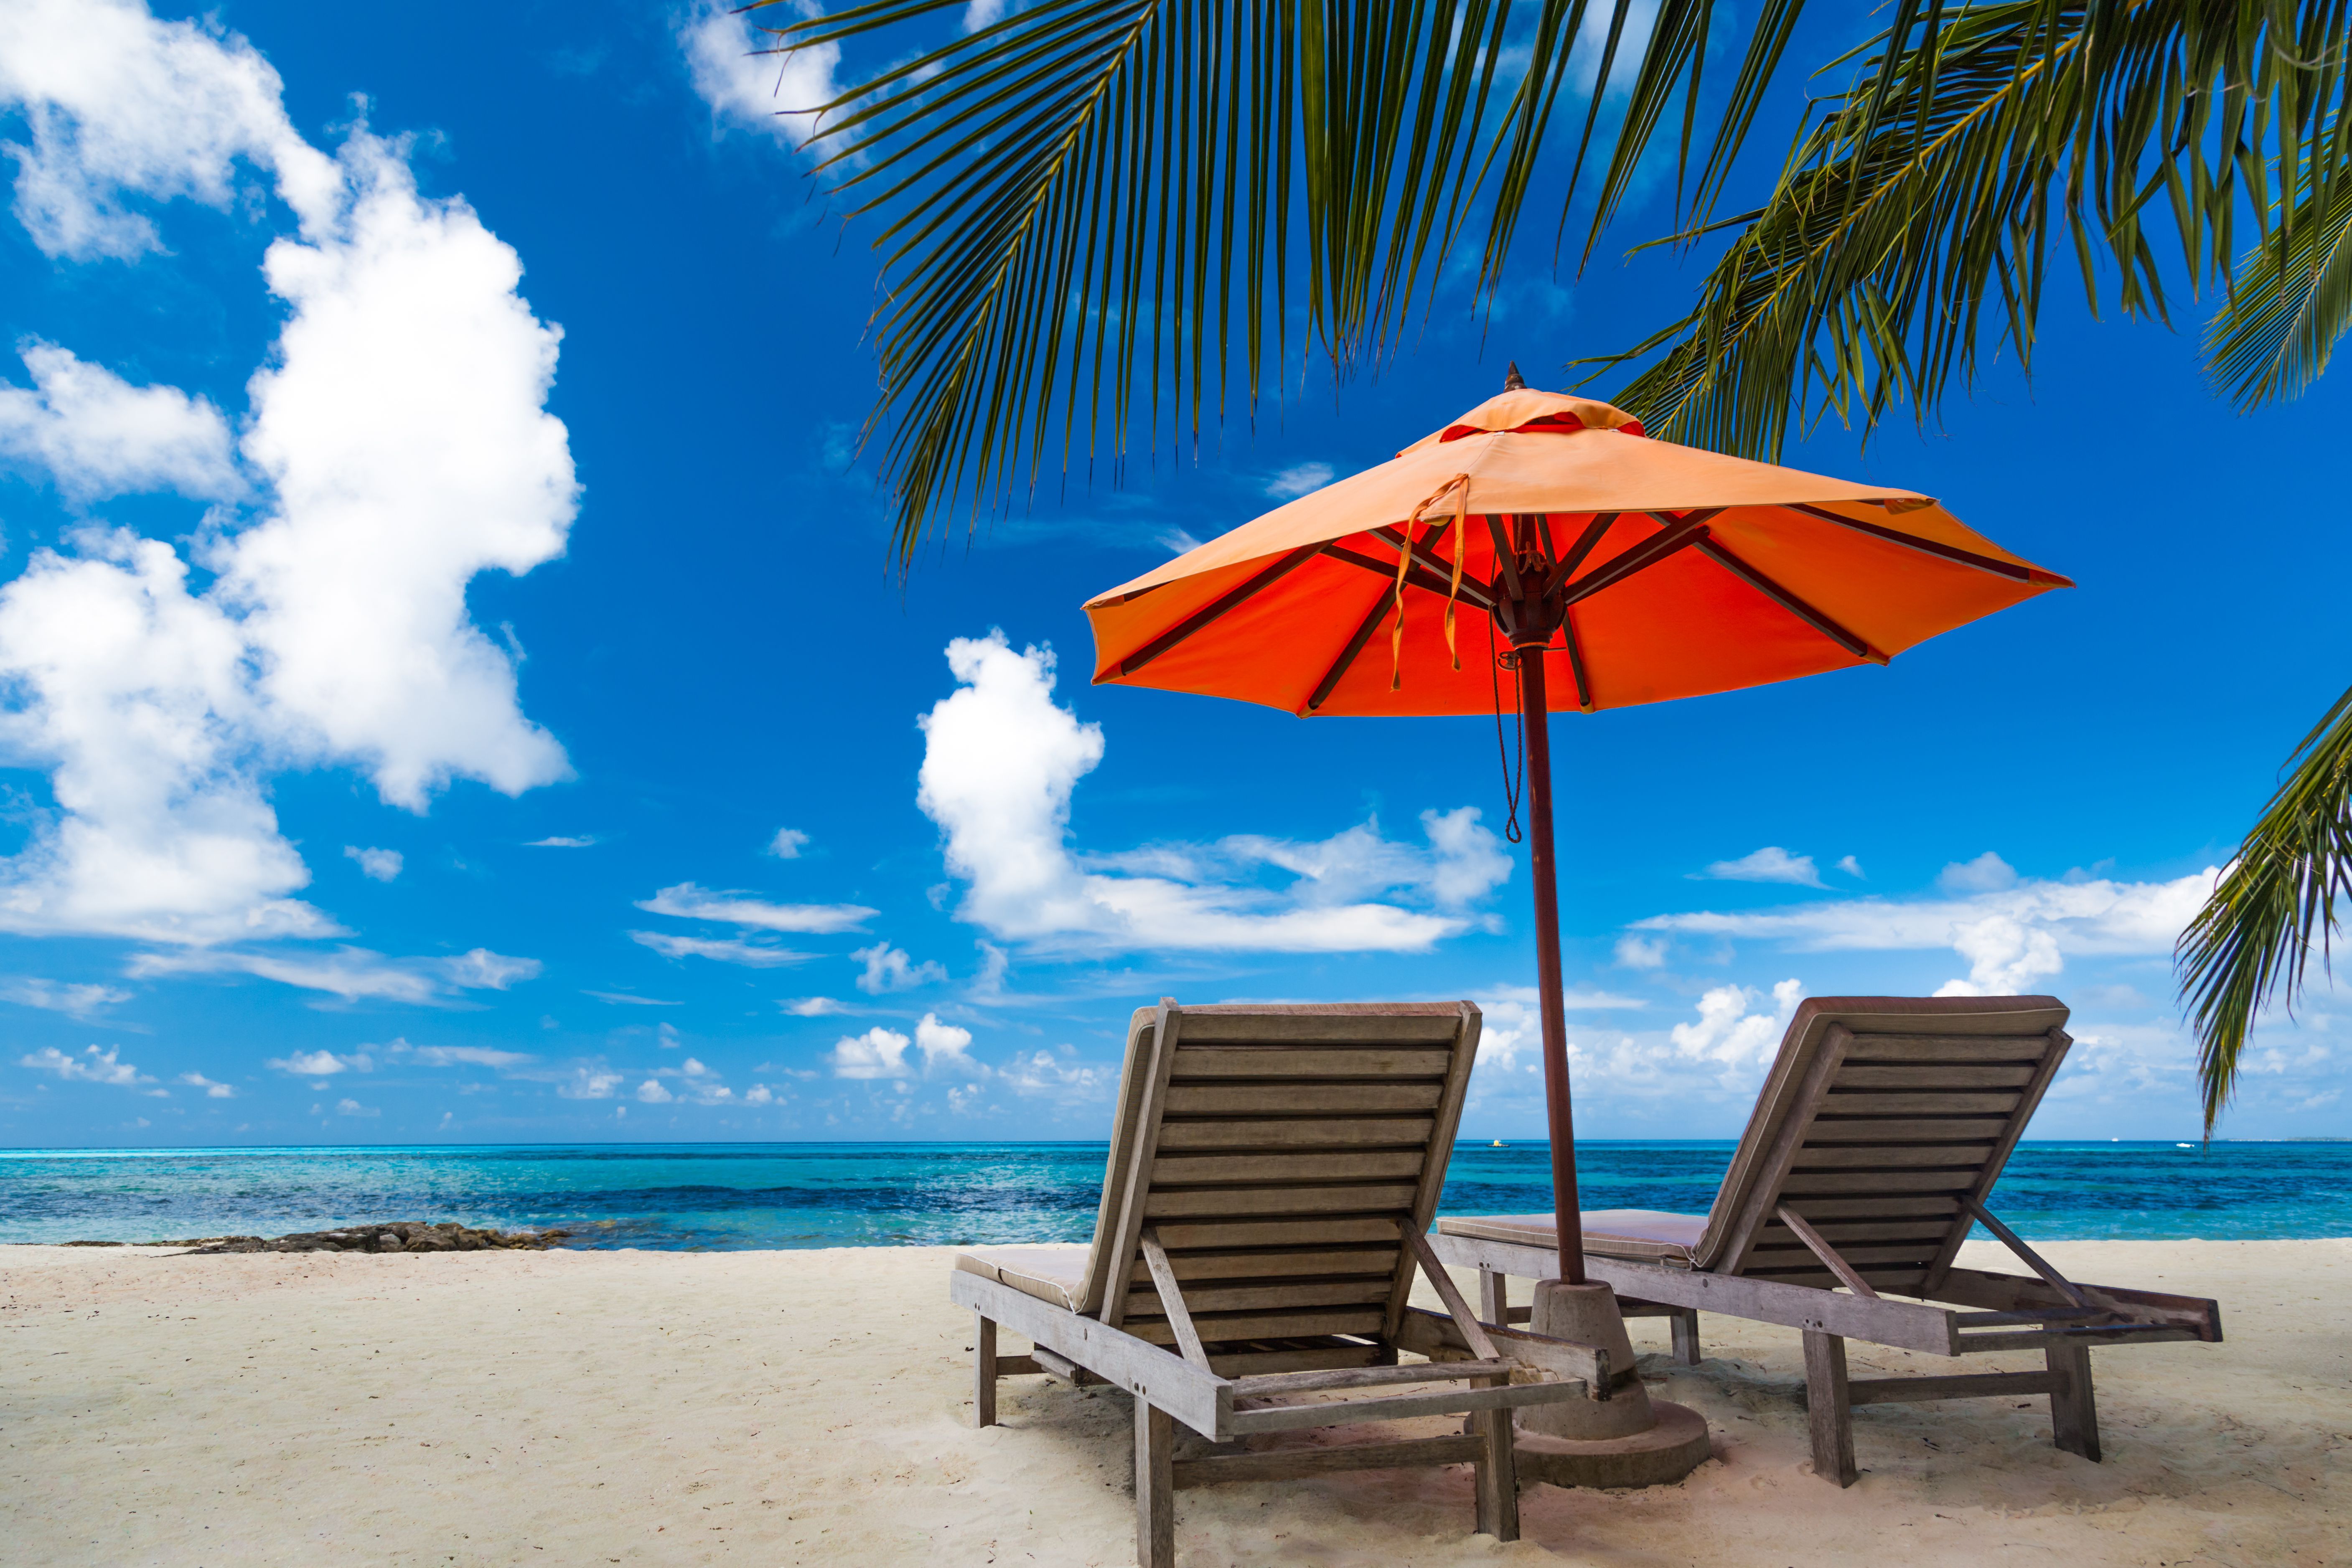 Красивая предпосылка пляжа для перемещения лета с кроватью солнца, кокосовой пальмы и пляжа деревянной на песке с красивым голубым морем и голубым небом. Летнее настроение солнца пляж фон концепции.